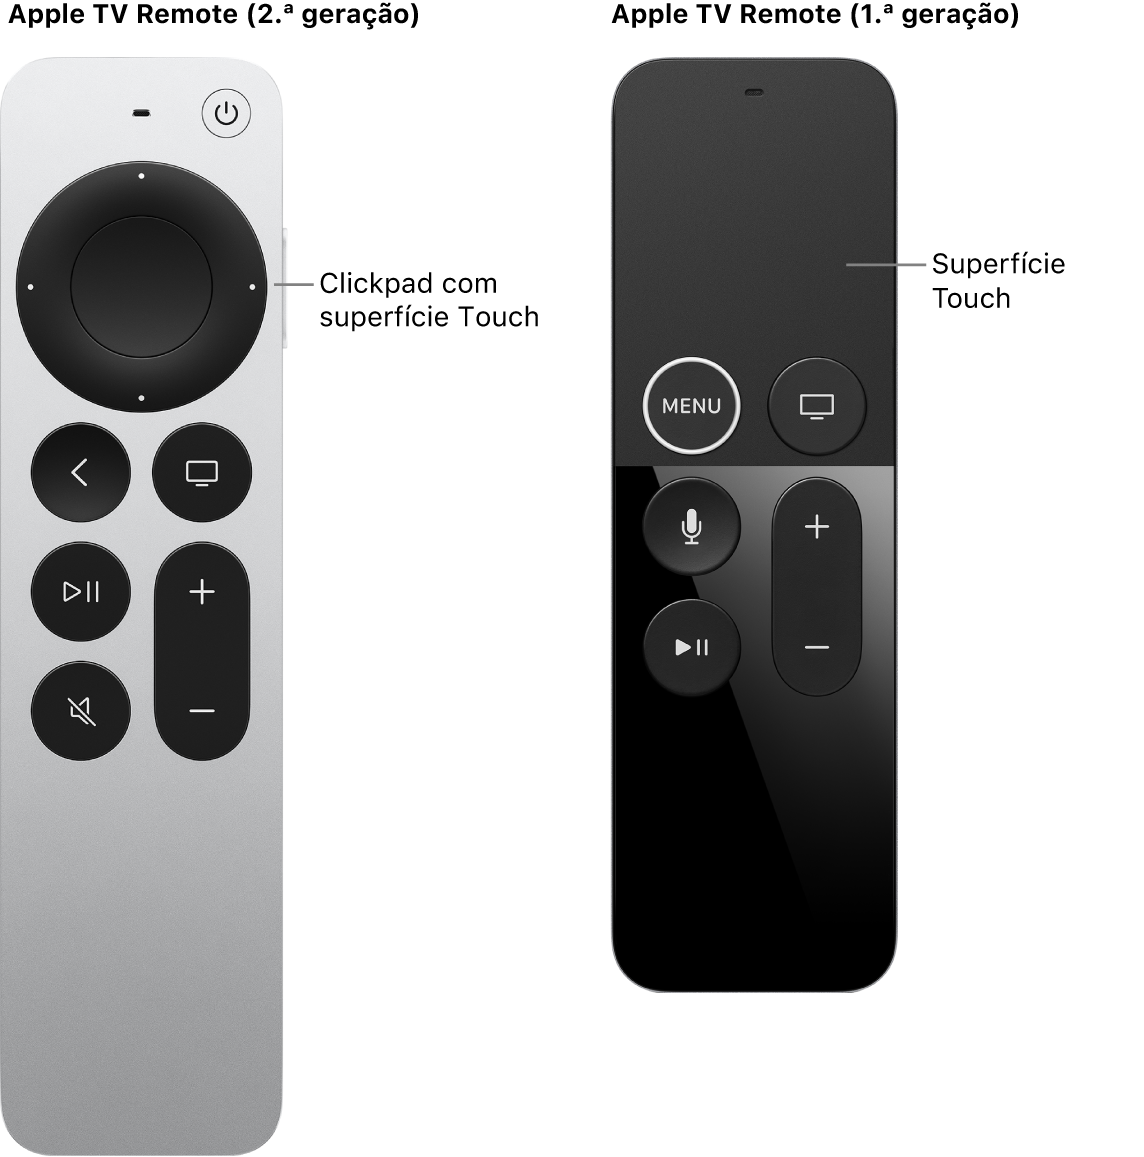 Apple TV Remote (2.ª e 3.ª geração) com clickpad e Apple TV Remote (1.ª geração) com superfície Touch